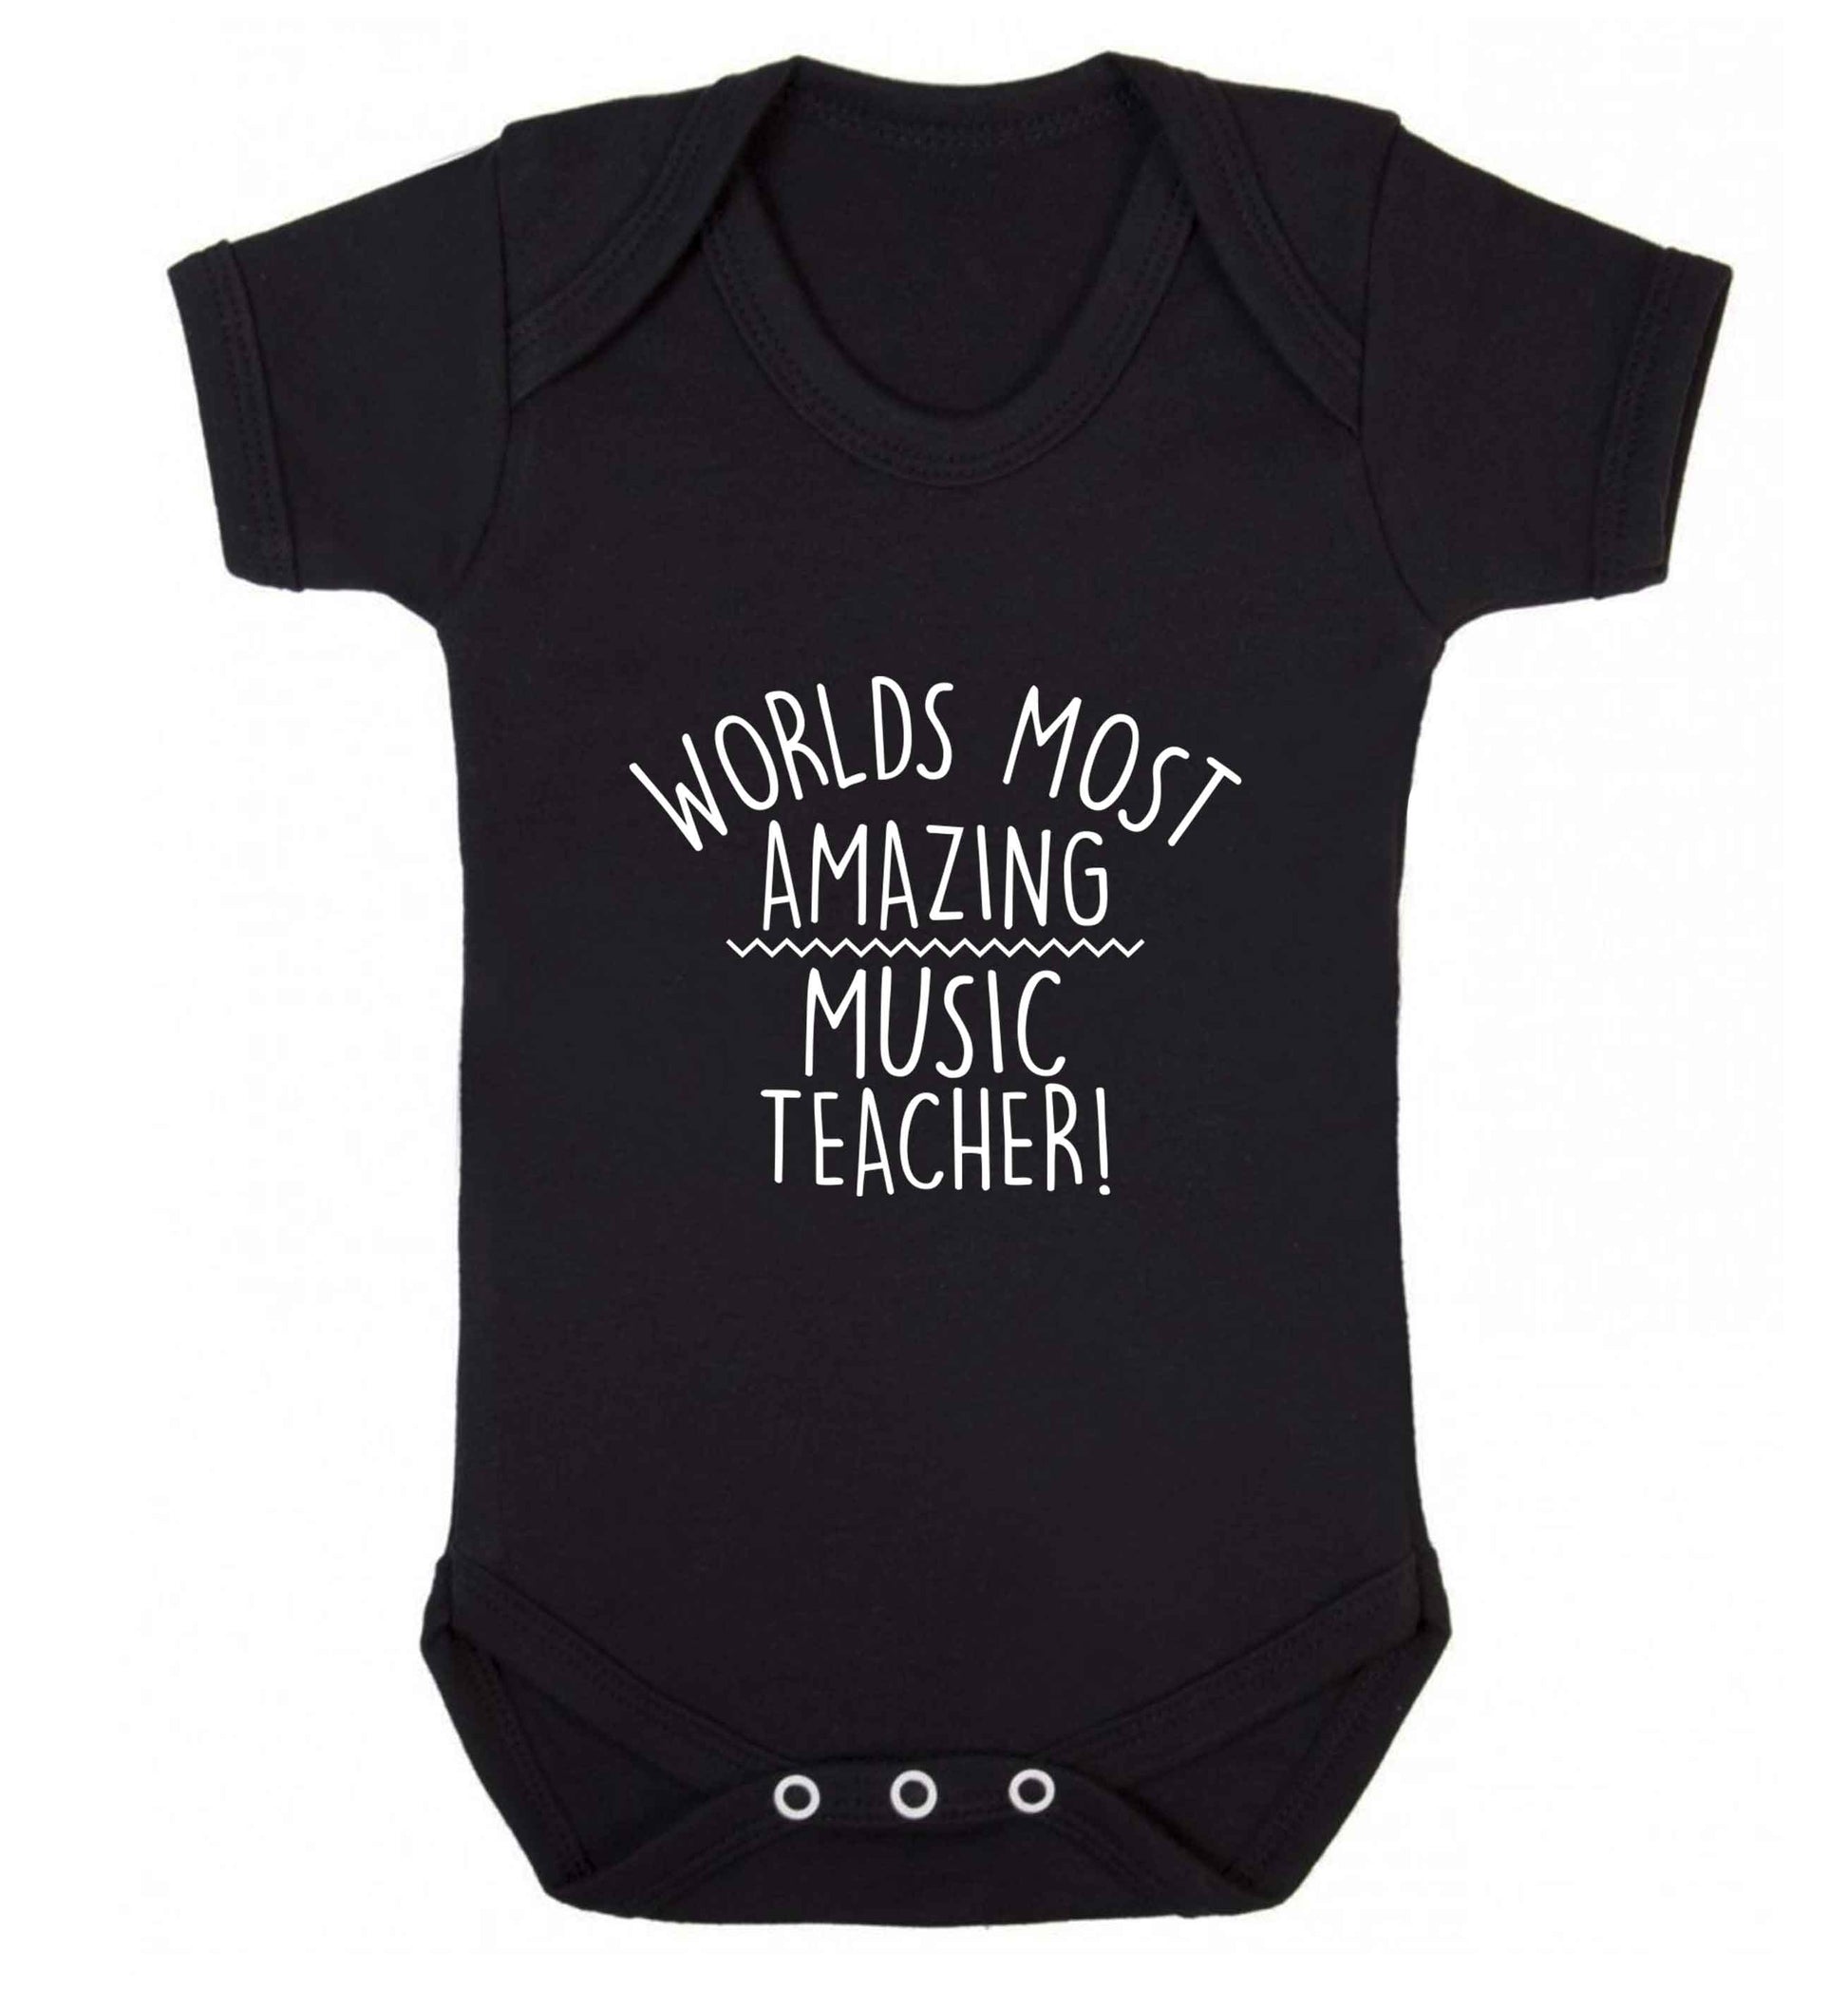 Worlds most amazing music teacher baby vest black 18-24 months